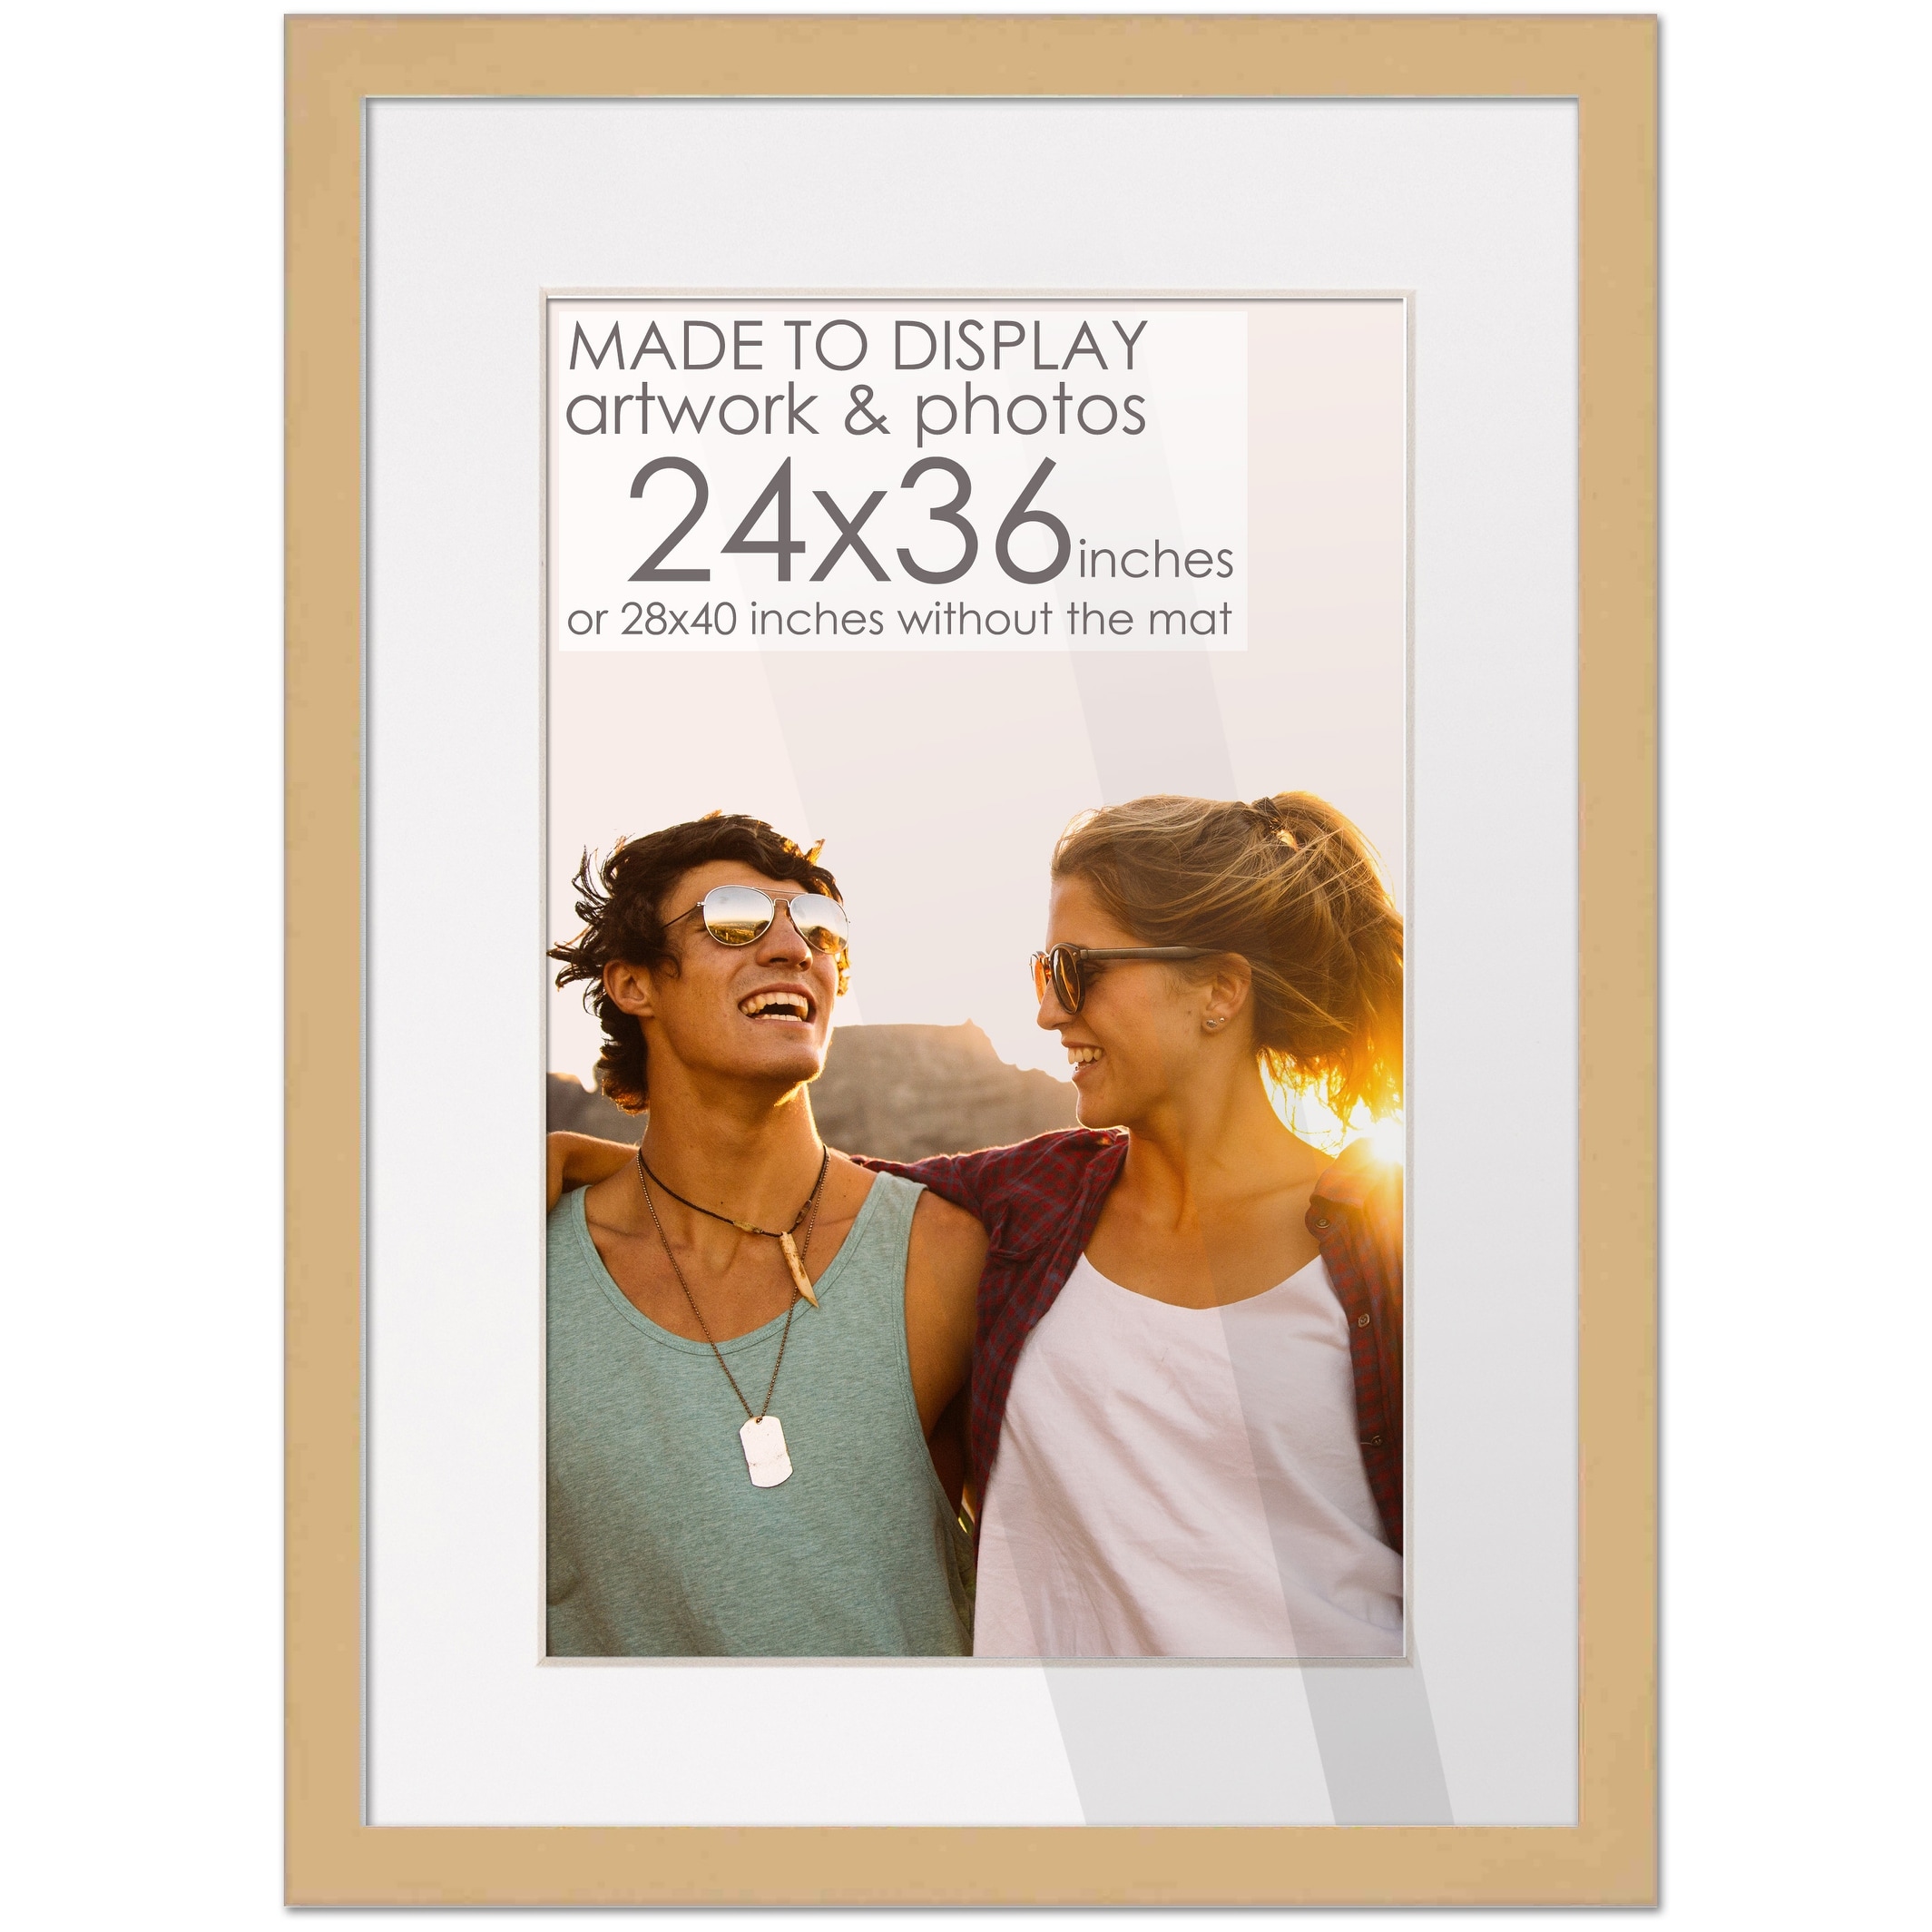 Gold Frame 30x40 cm - Buy golden metal frame online